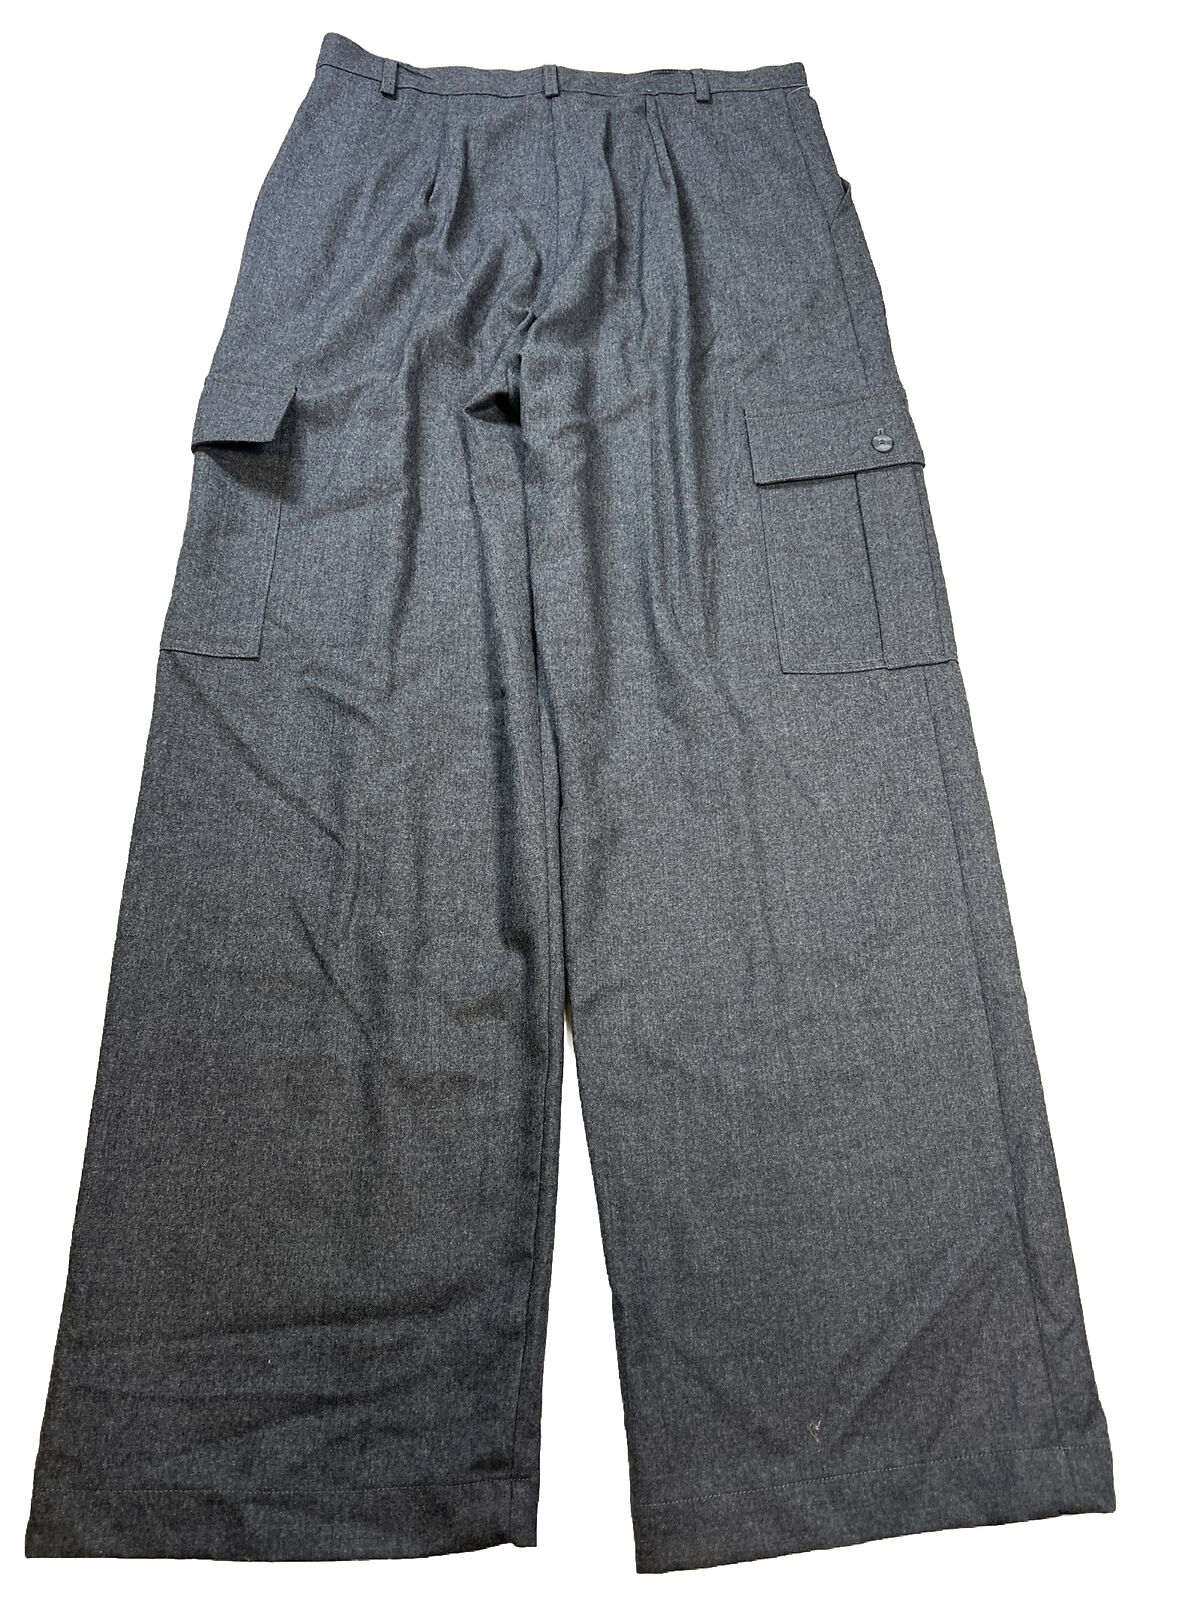 NUEVO Pantalón de vestir tipo cargo de lana gris de Bloomingdales para mujer - 14